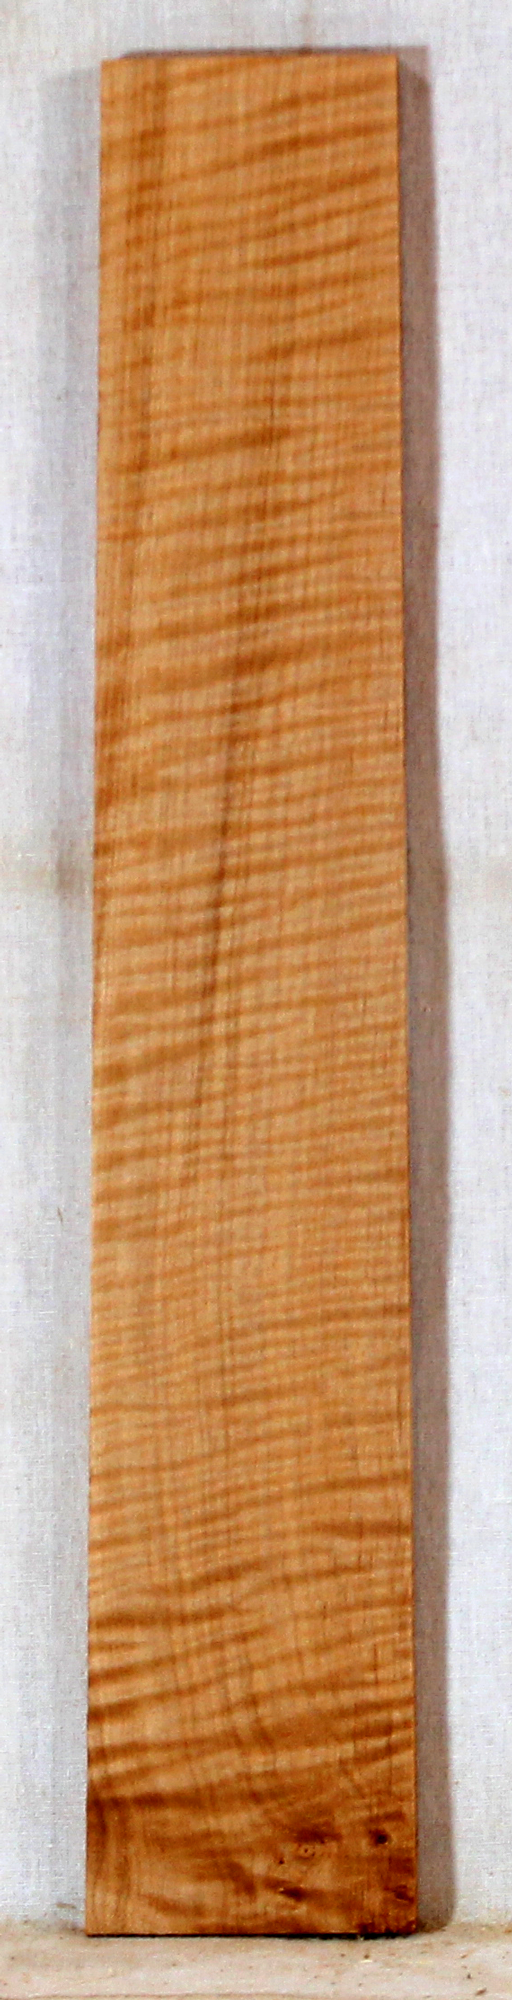 Maple Ukulele Fingerboard Stabilized (EG55)